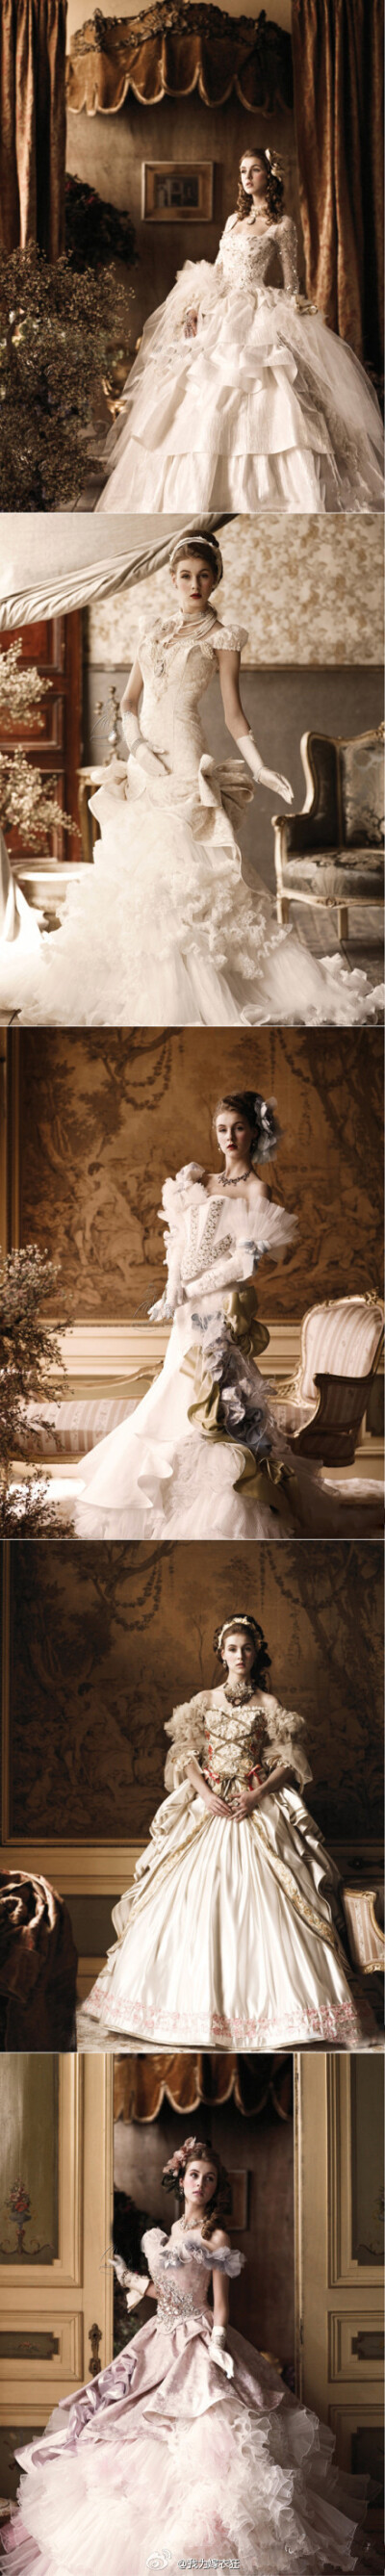 华丽宫廷浪漫的婚纱款,浓郁的欧式宫廷风格,古典风范!